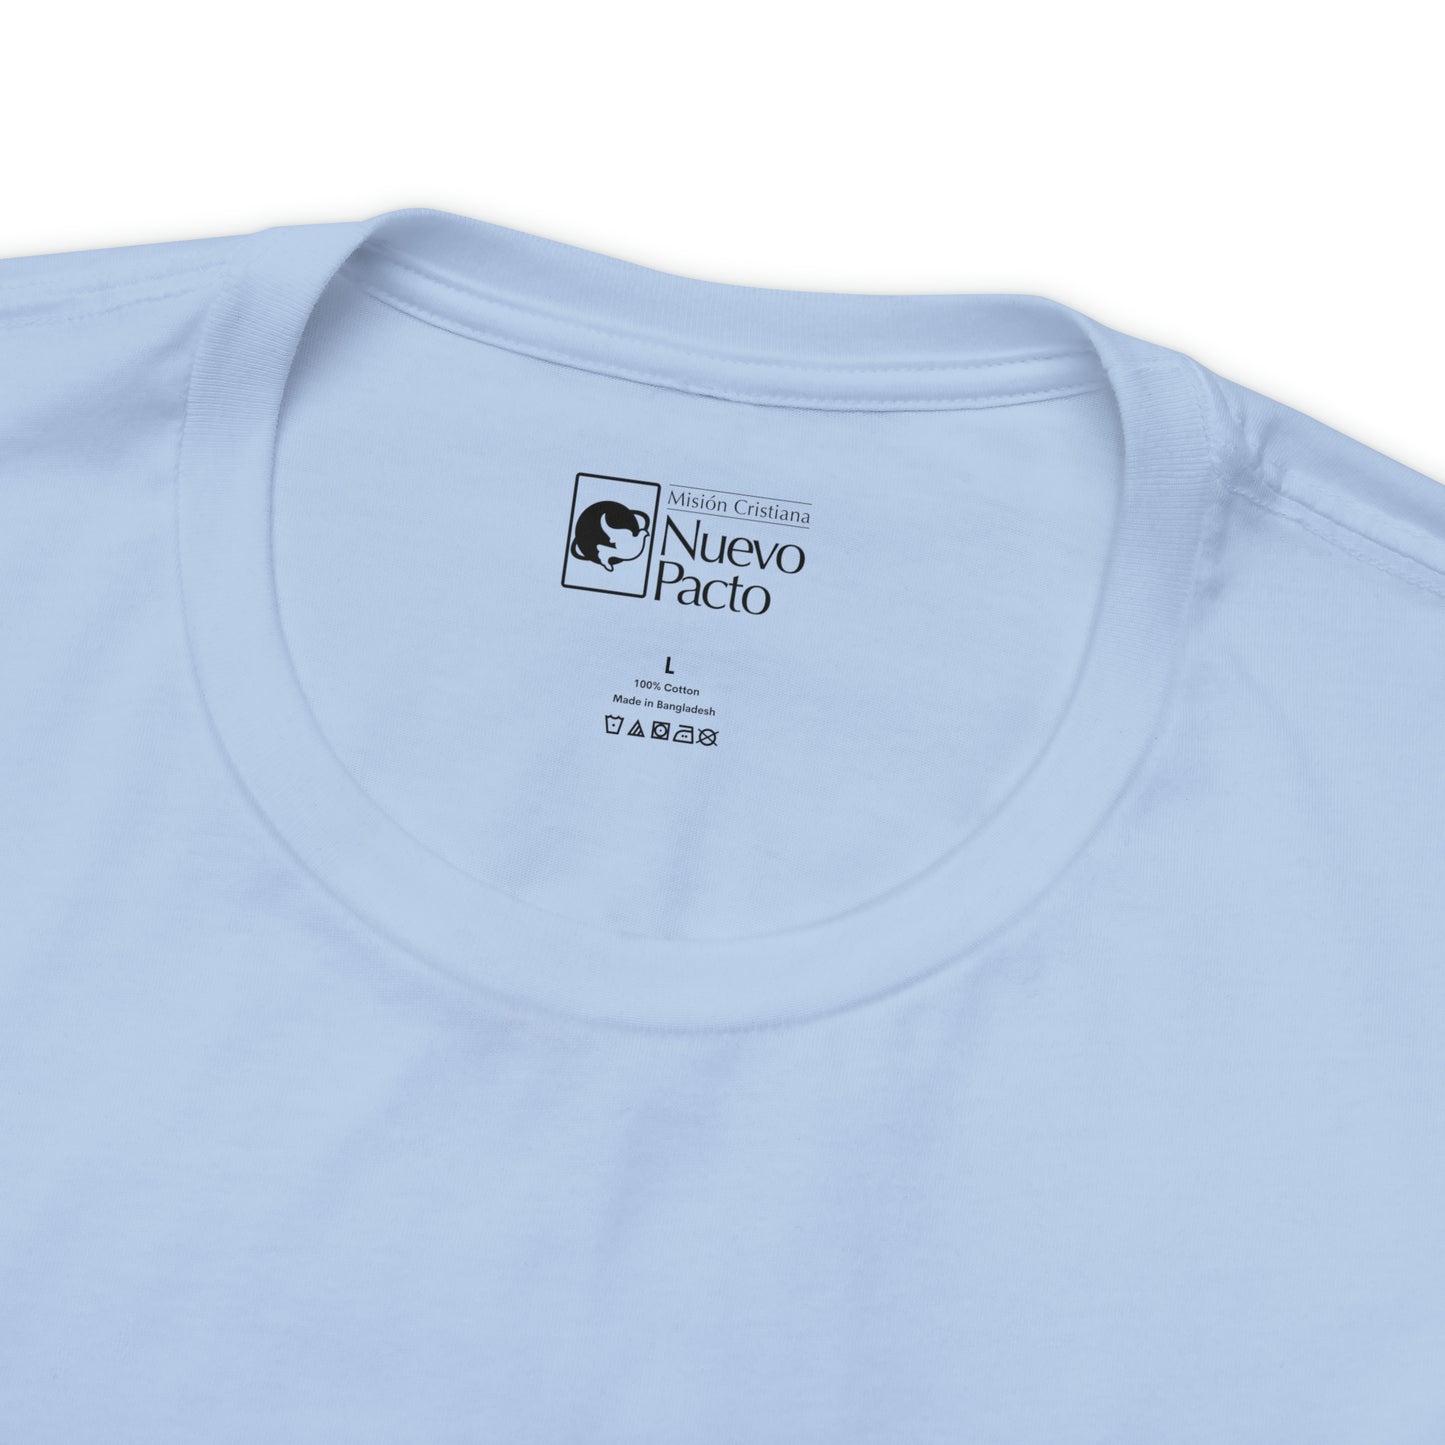 Grita, Canta, Danza — Camiseta unisex de manga corta